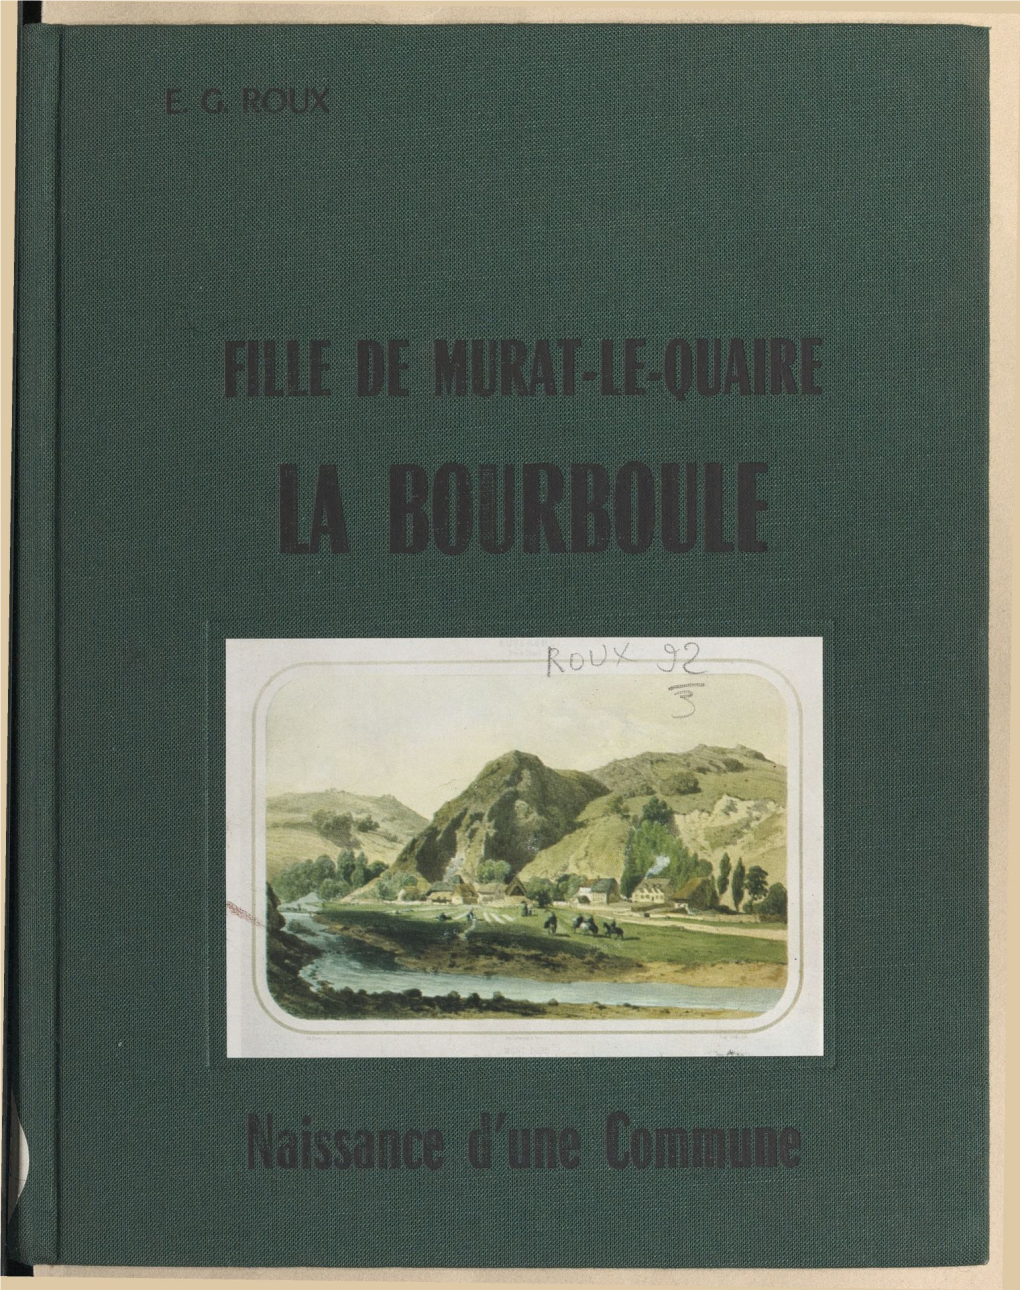 La Bourboule, Fille De Murat-Le-Quaire. Naissance D'une